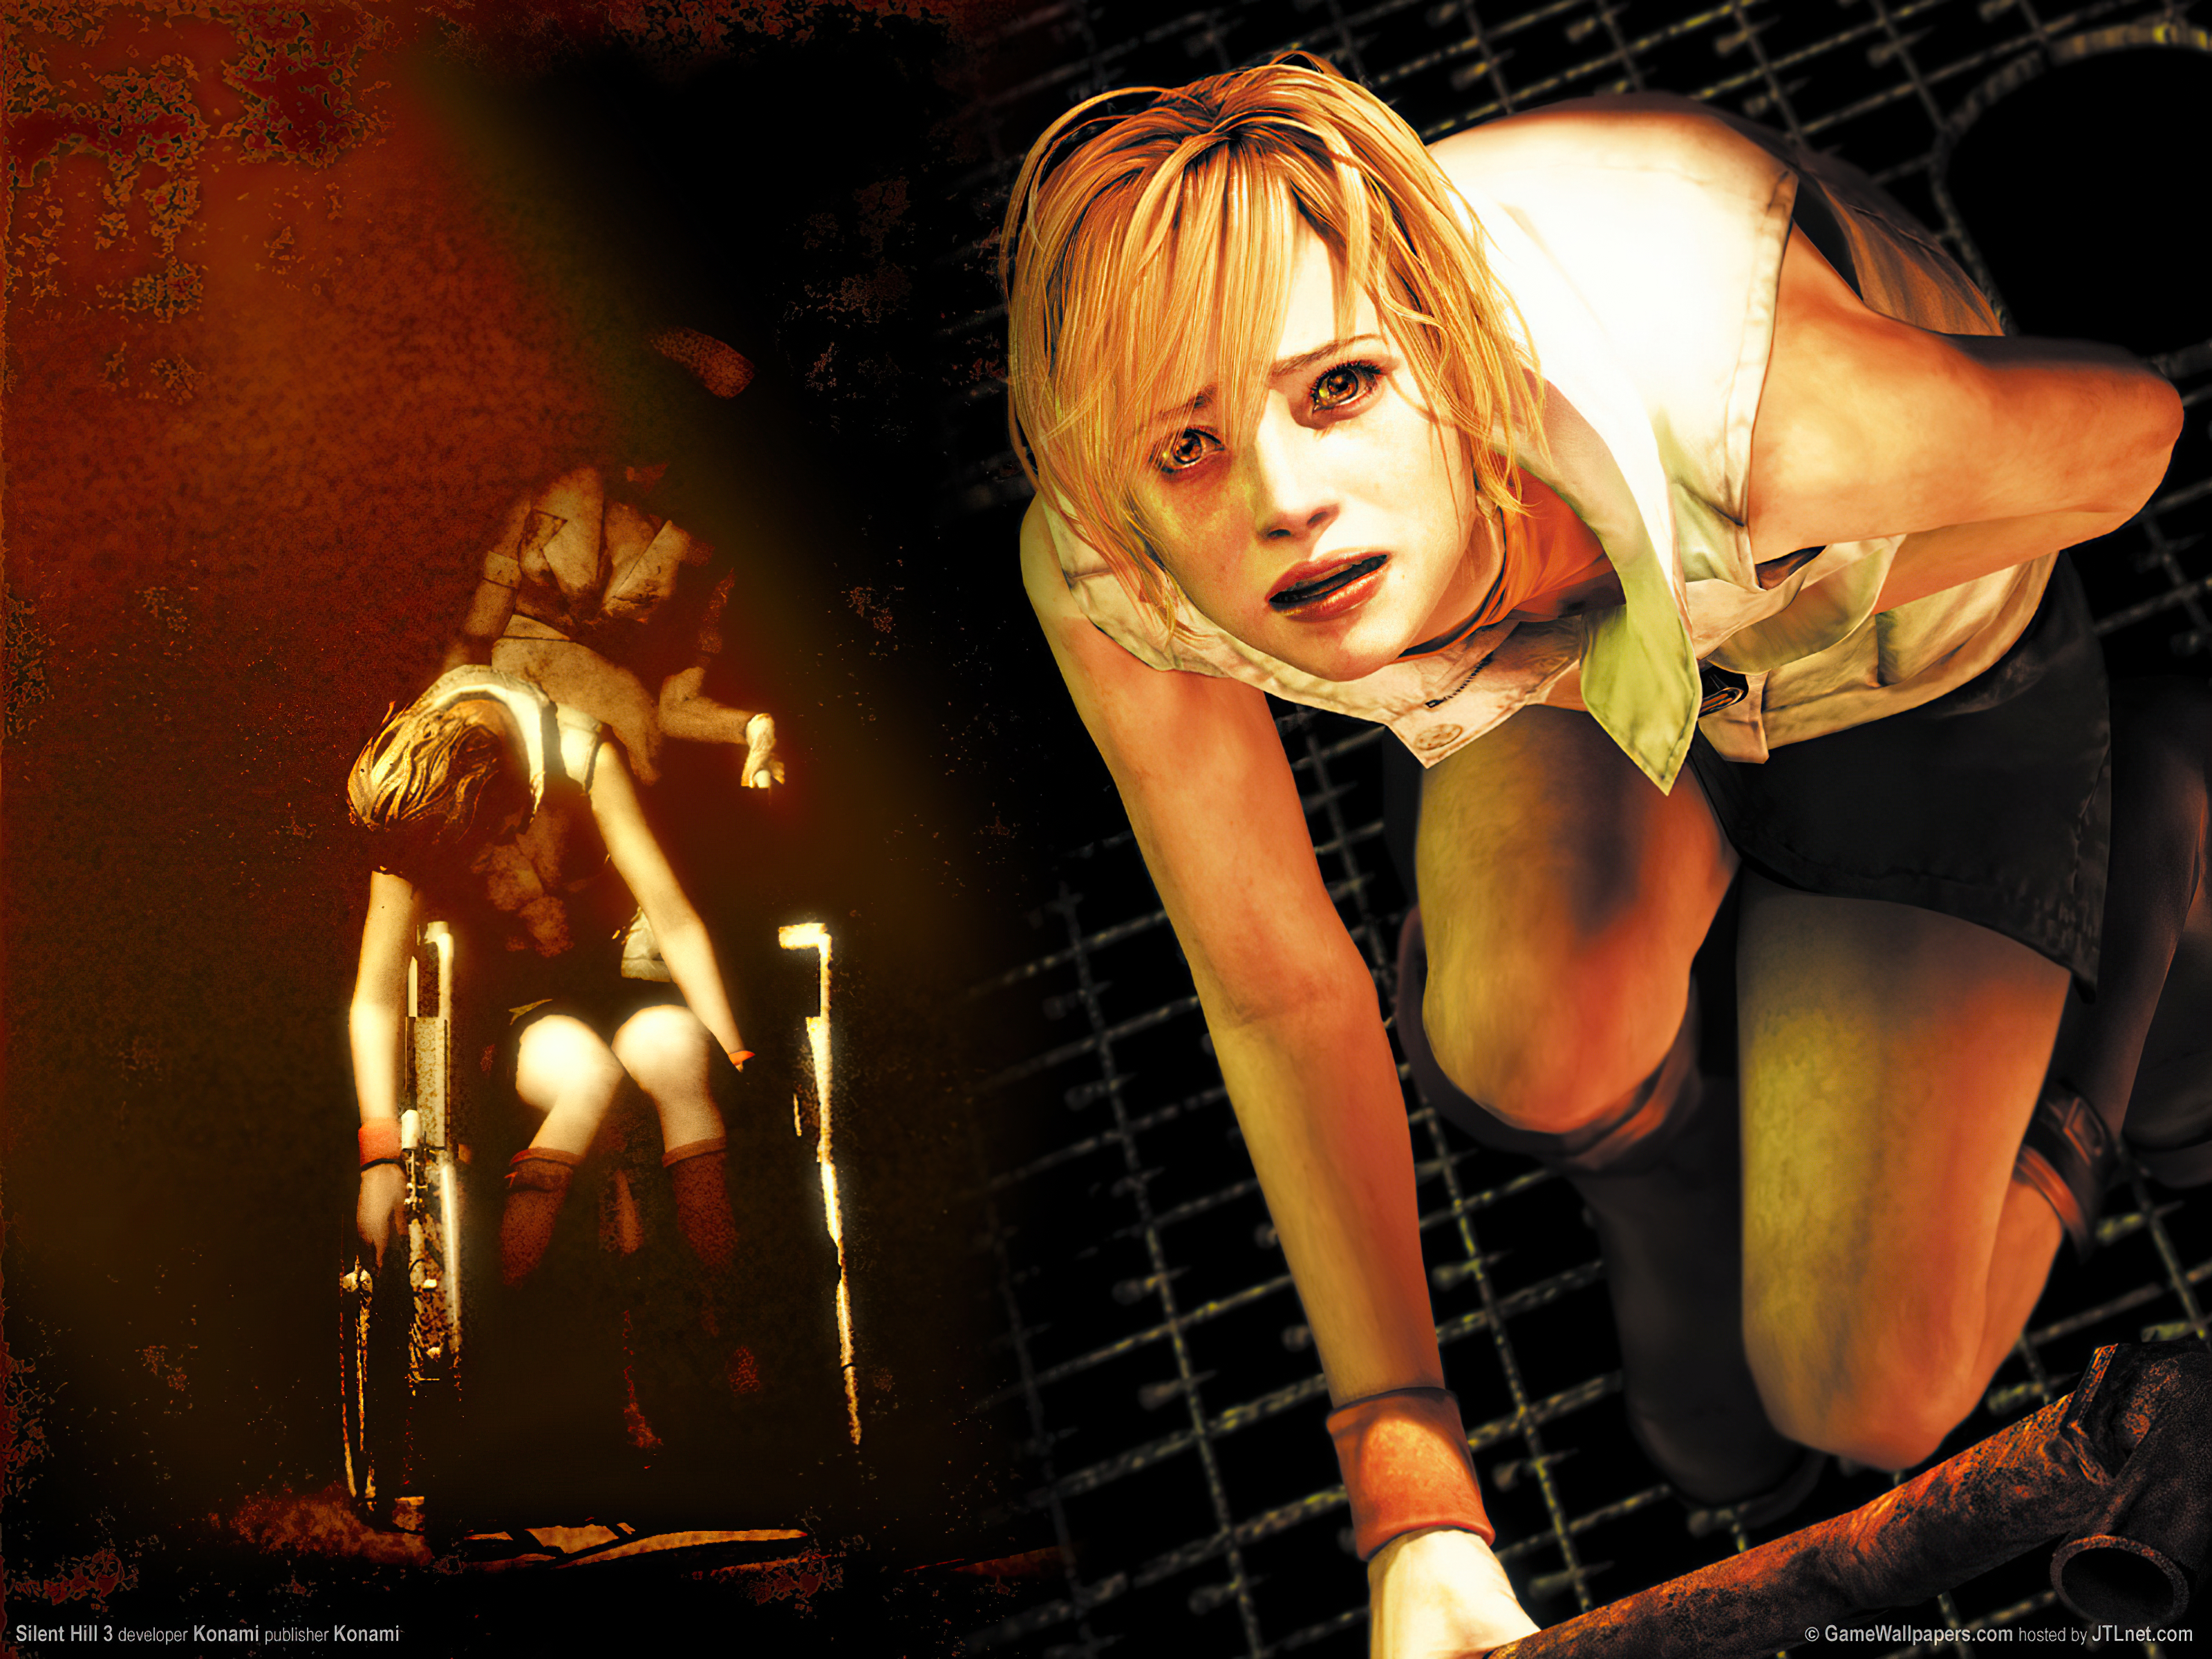 Melhores papéis de parede de Silent Hill 3 para tela do telefone